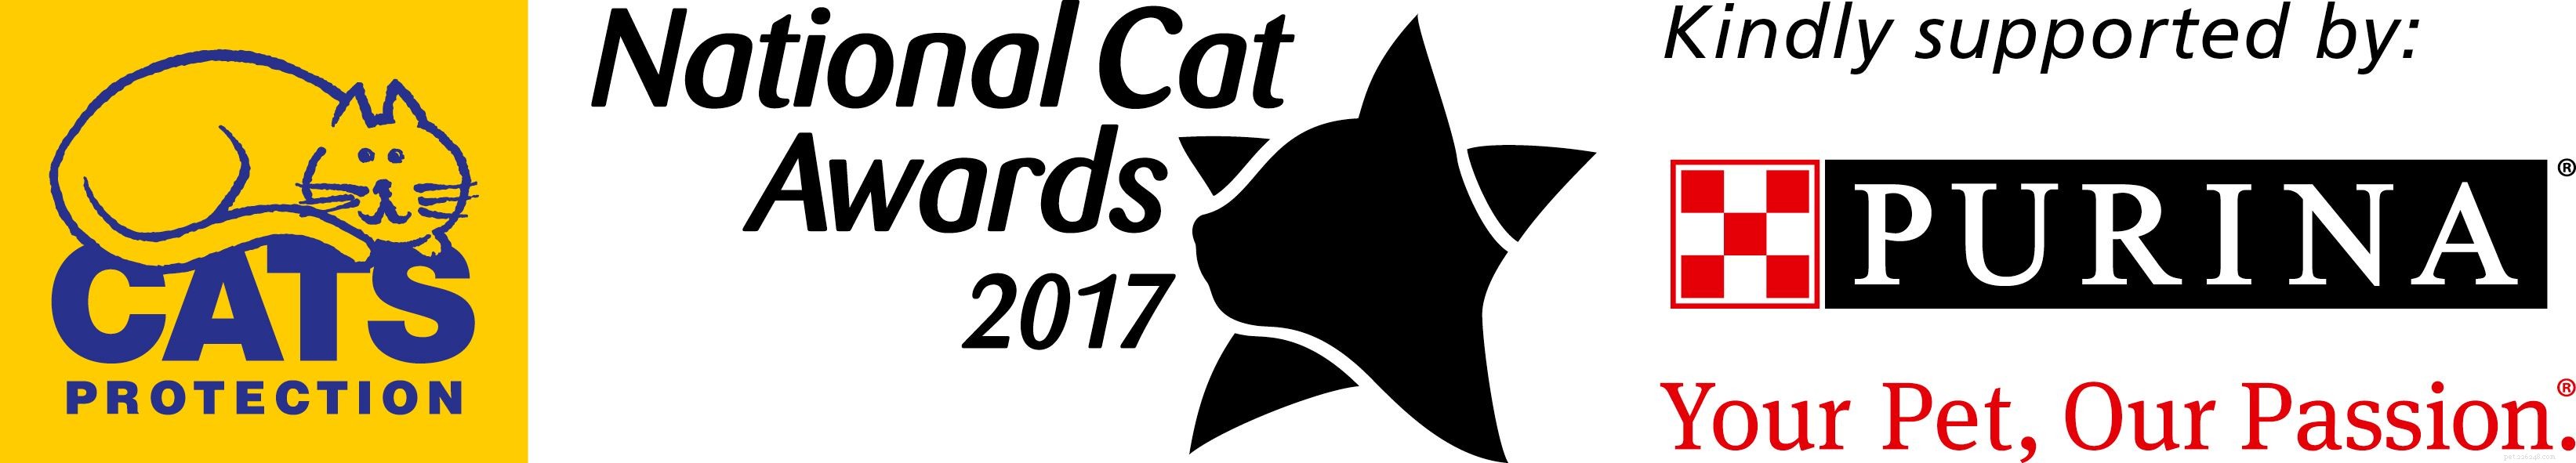 Seznamte se s finalisty kategorie Outstanding Rescue Cat v National Cat Awards 2017!